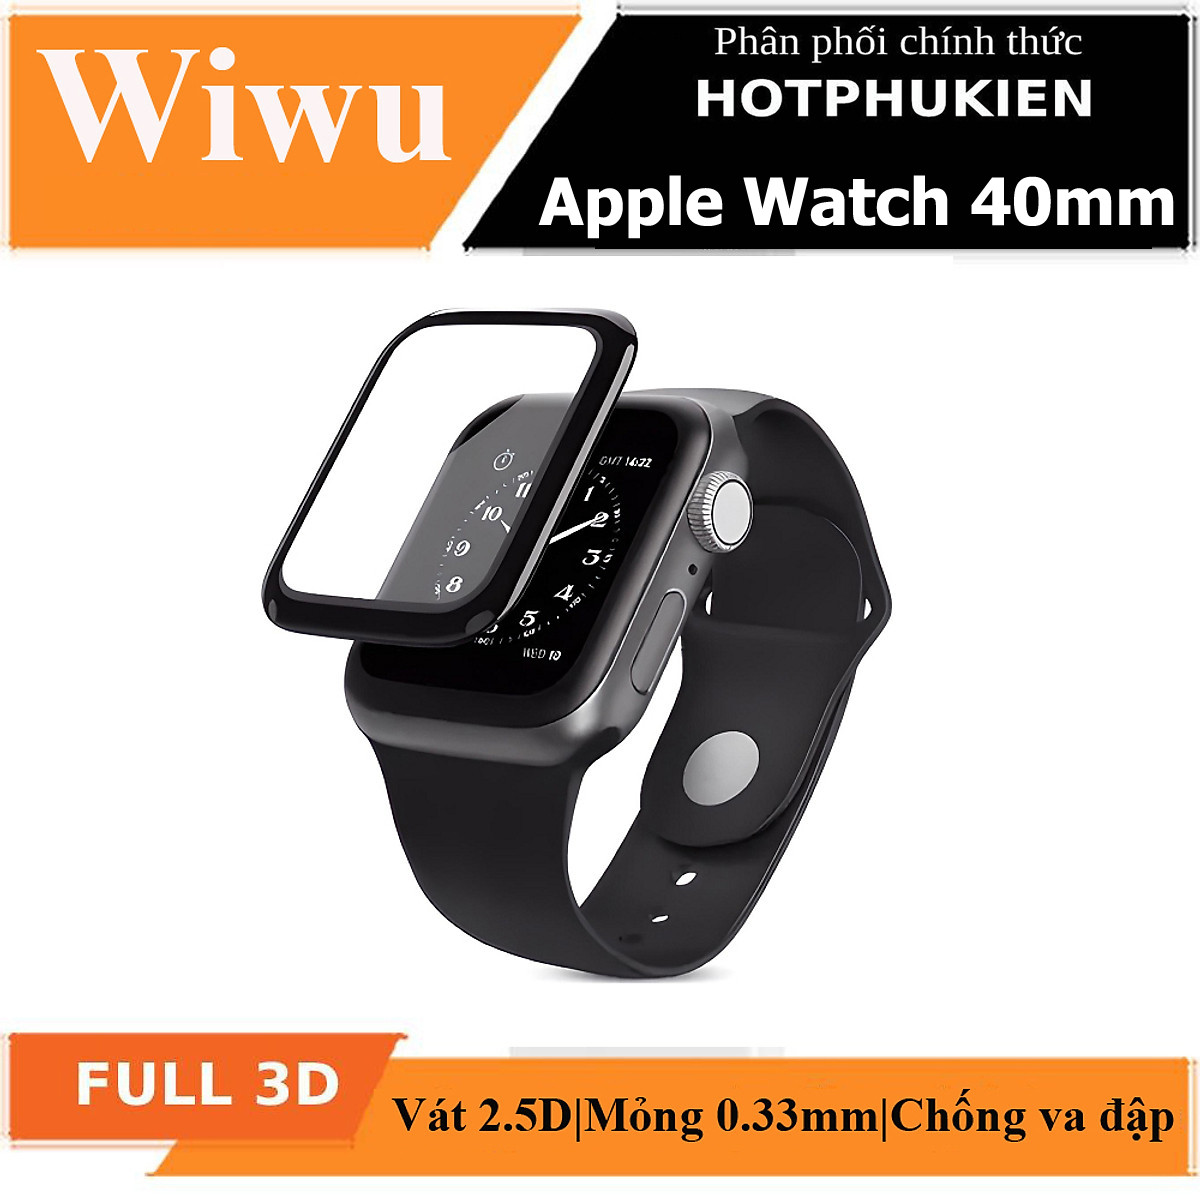 Bộ 2 miếng dán màn hình kính cường lực Full 3D cho Apple Watch 40mm hiệu WIWU iVista